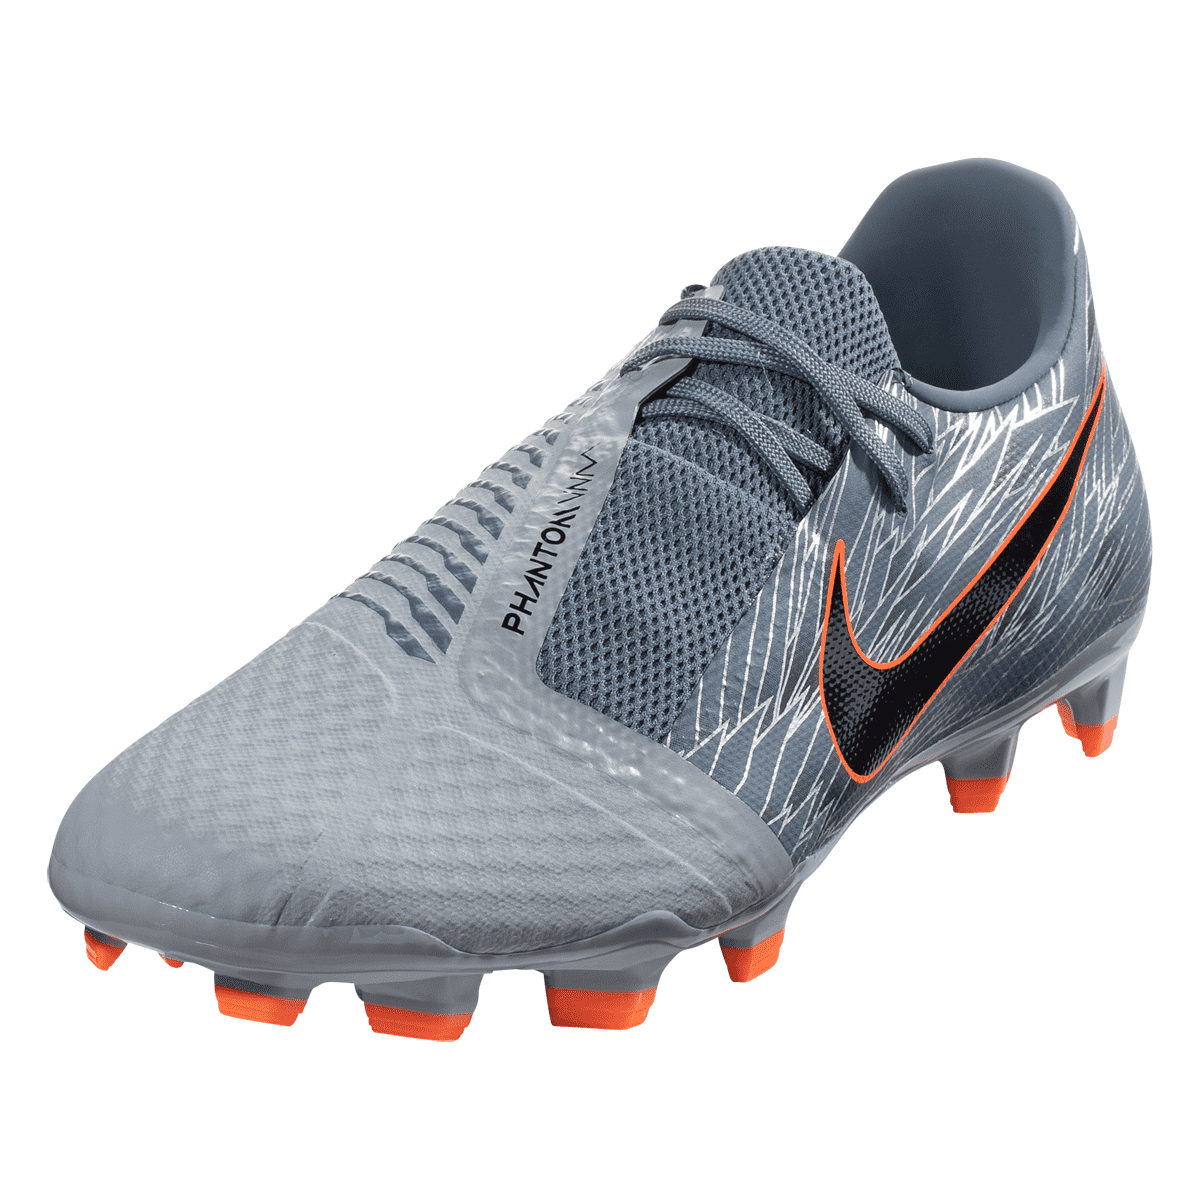 Nike Phantom Venom Academy TF Artificial Turf Soccer Shoe .